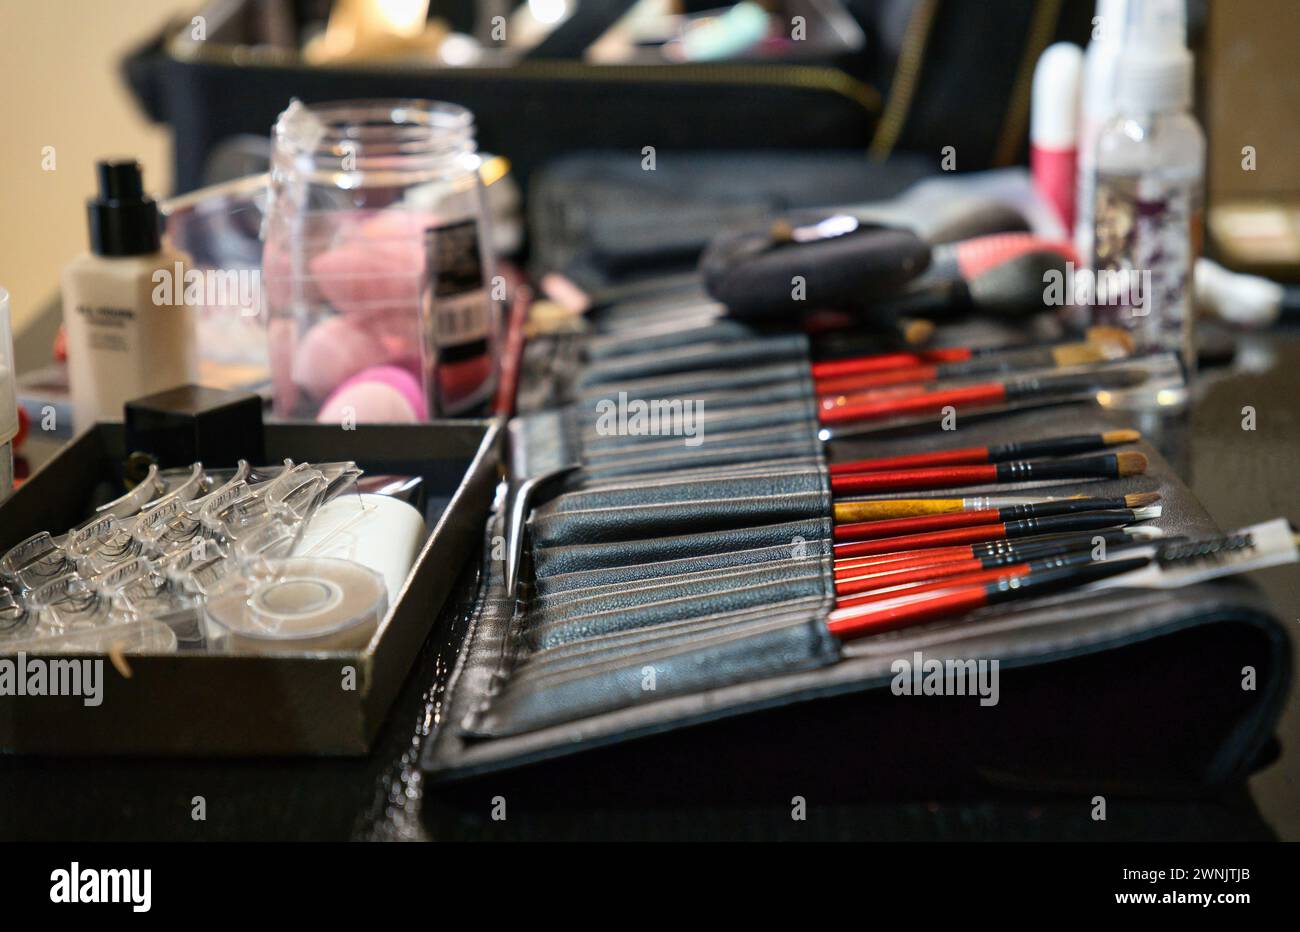 Cosmetici decorativi professionali, utensili per il trucco e accessori, disposti su un tavolo. Postazione di lavoro per make-up artist, scrivania, studio. Foto Stock